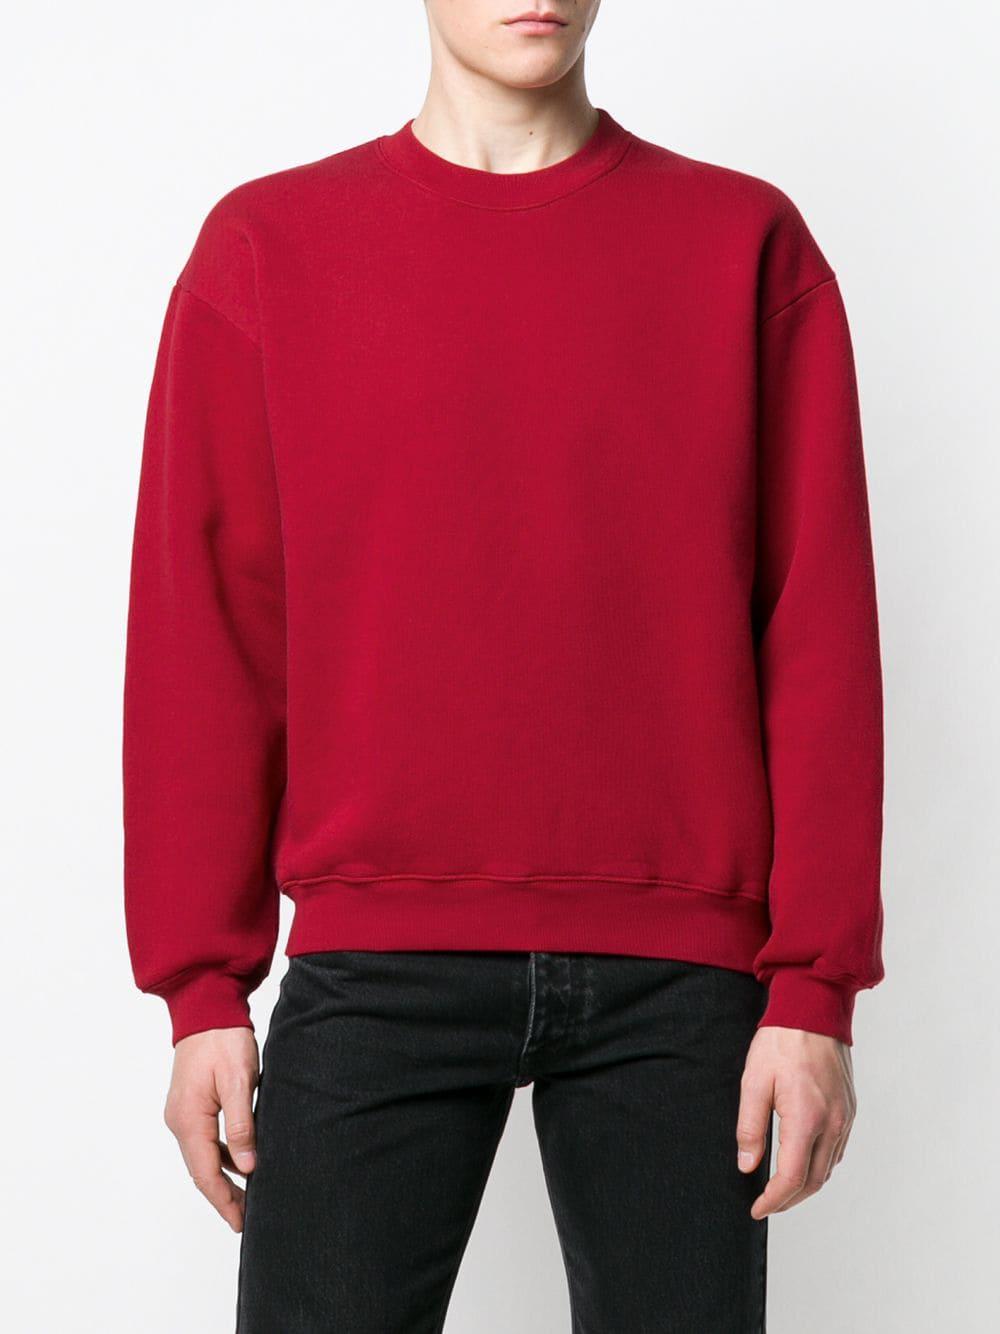 balenciaga red sweatshirt